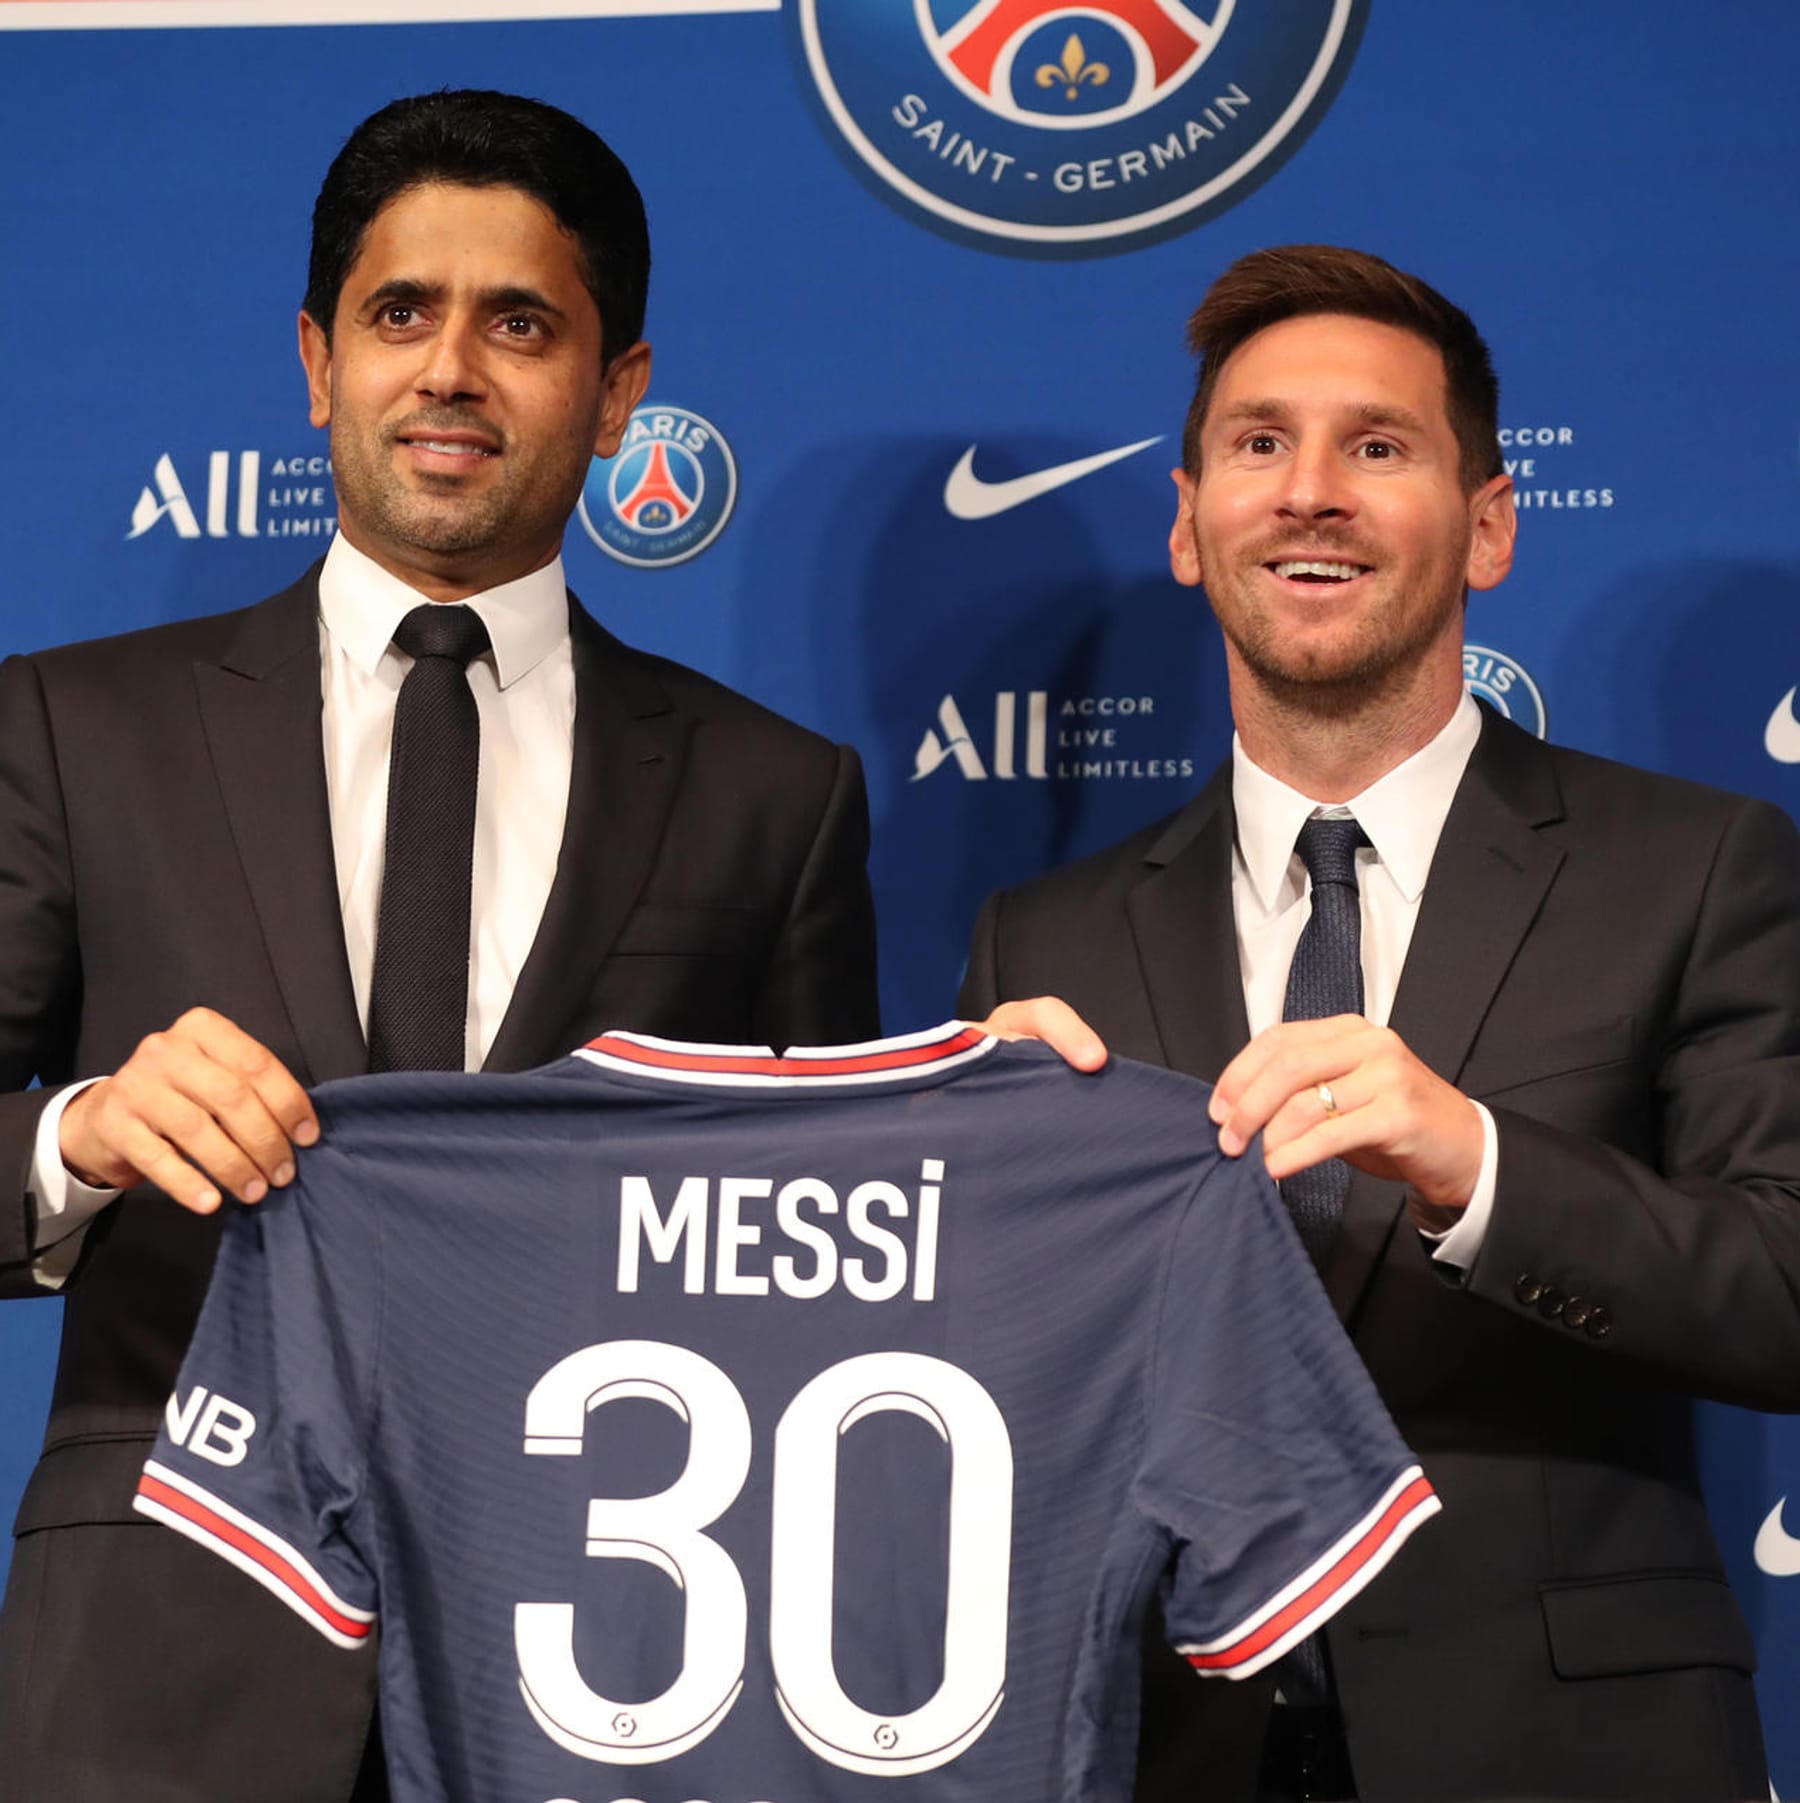 Pressekonferenz bei PSG Lionel Messi erklärt seinen Wechsel nach Paris